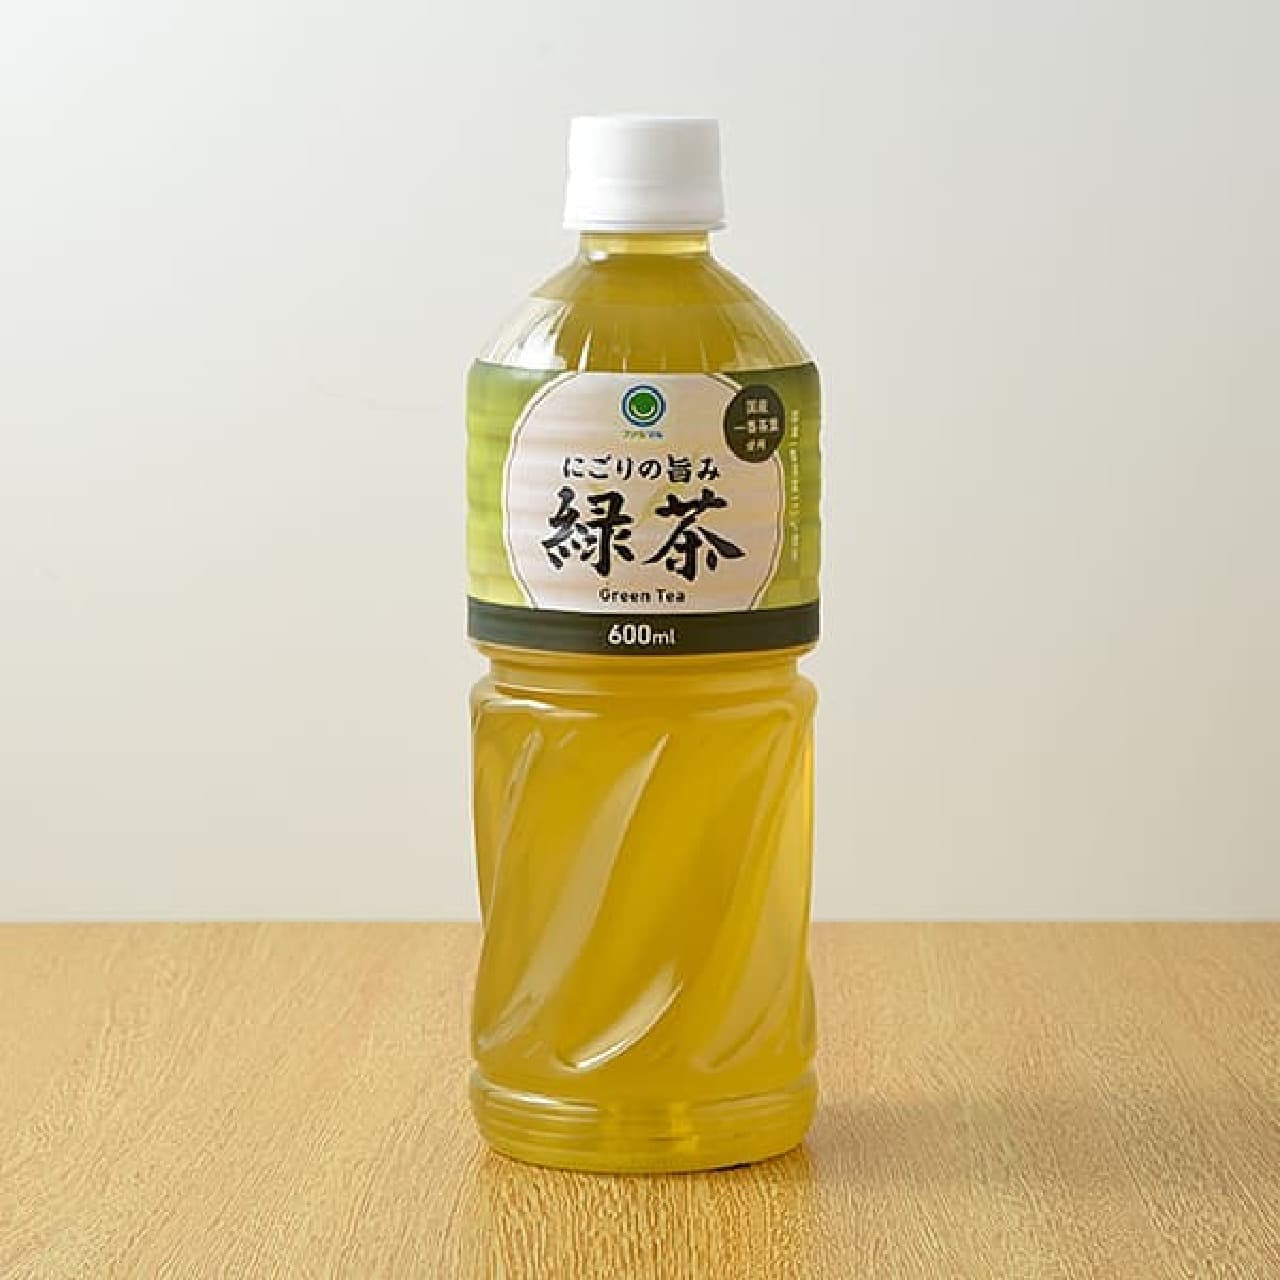 Famima nigori no umami green tea